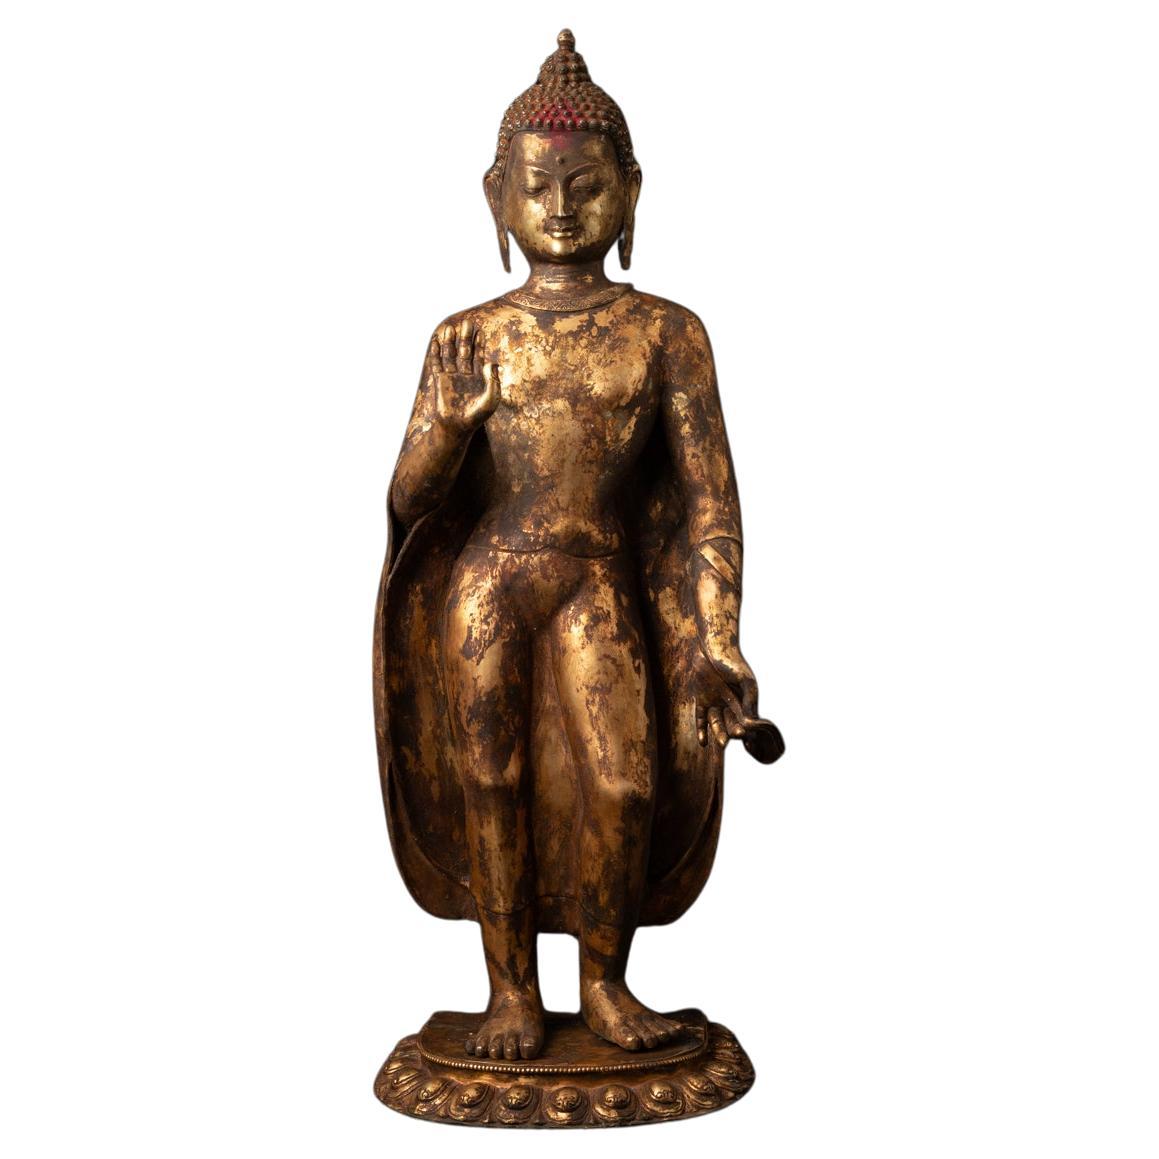 19th century Large antique Nepali Buddha statue Abhaya mudra - Originalbuddhas For Sale